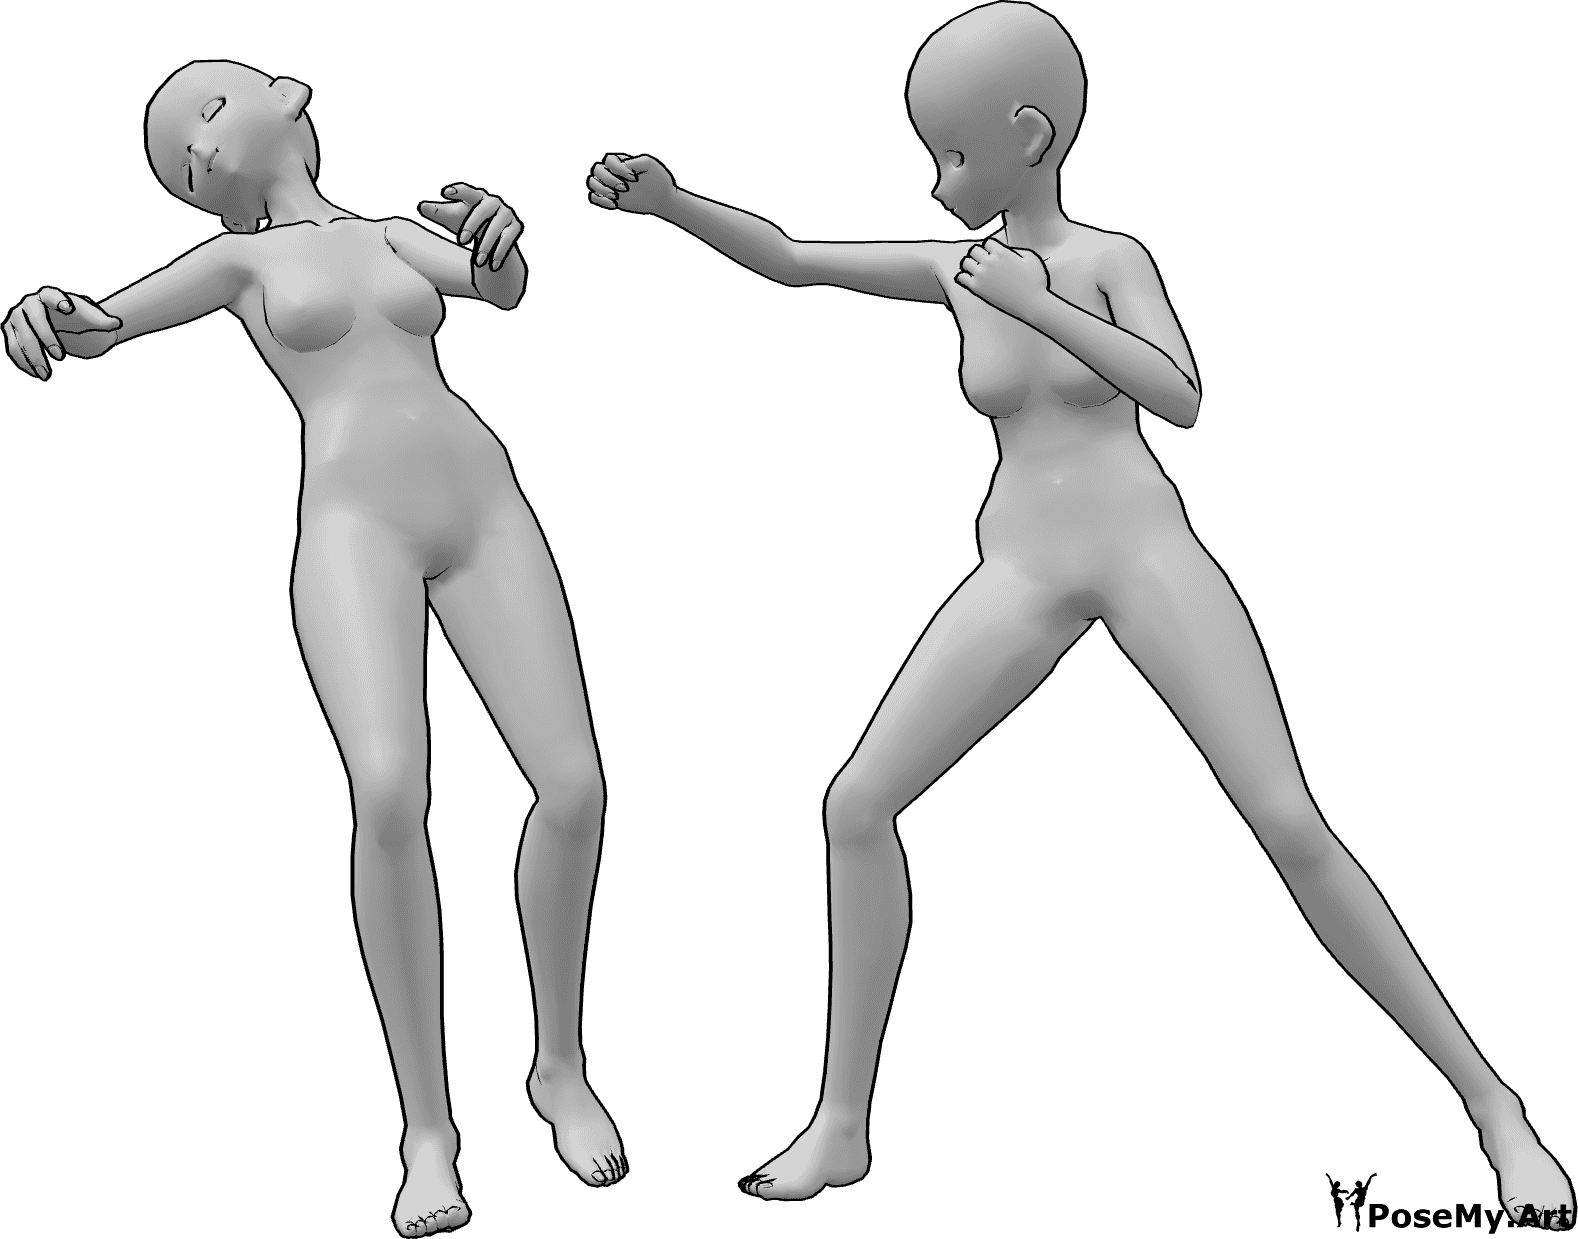 Posen-Referenz- Weibliche Punch-Fall-Pose - Anime-Frau fällt nach einem Schlag ins Gesicht ohnmächtig nach hinten